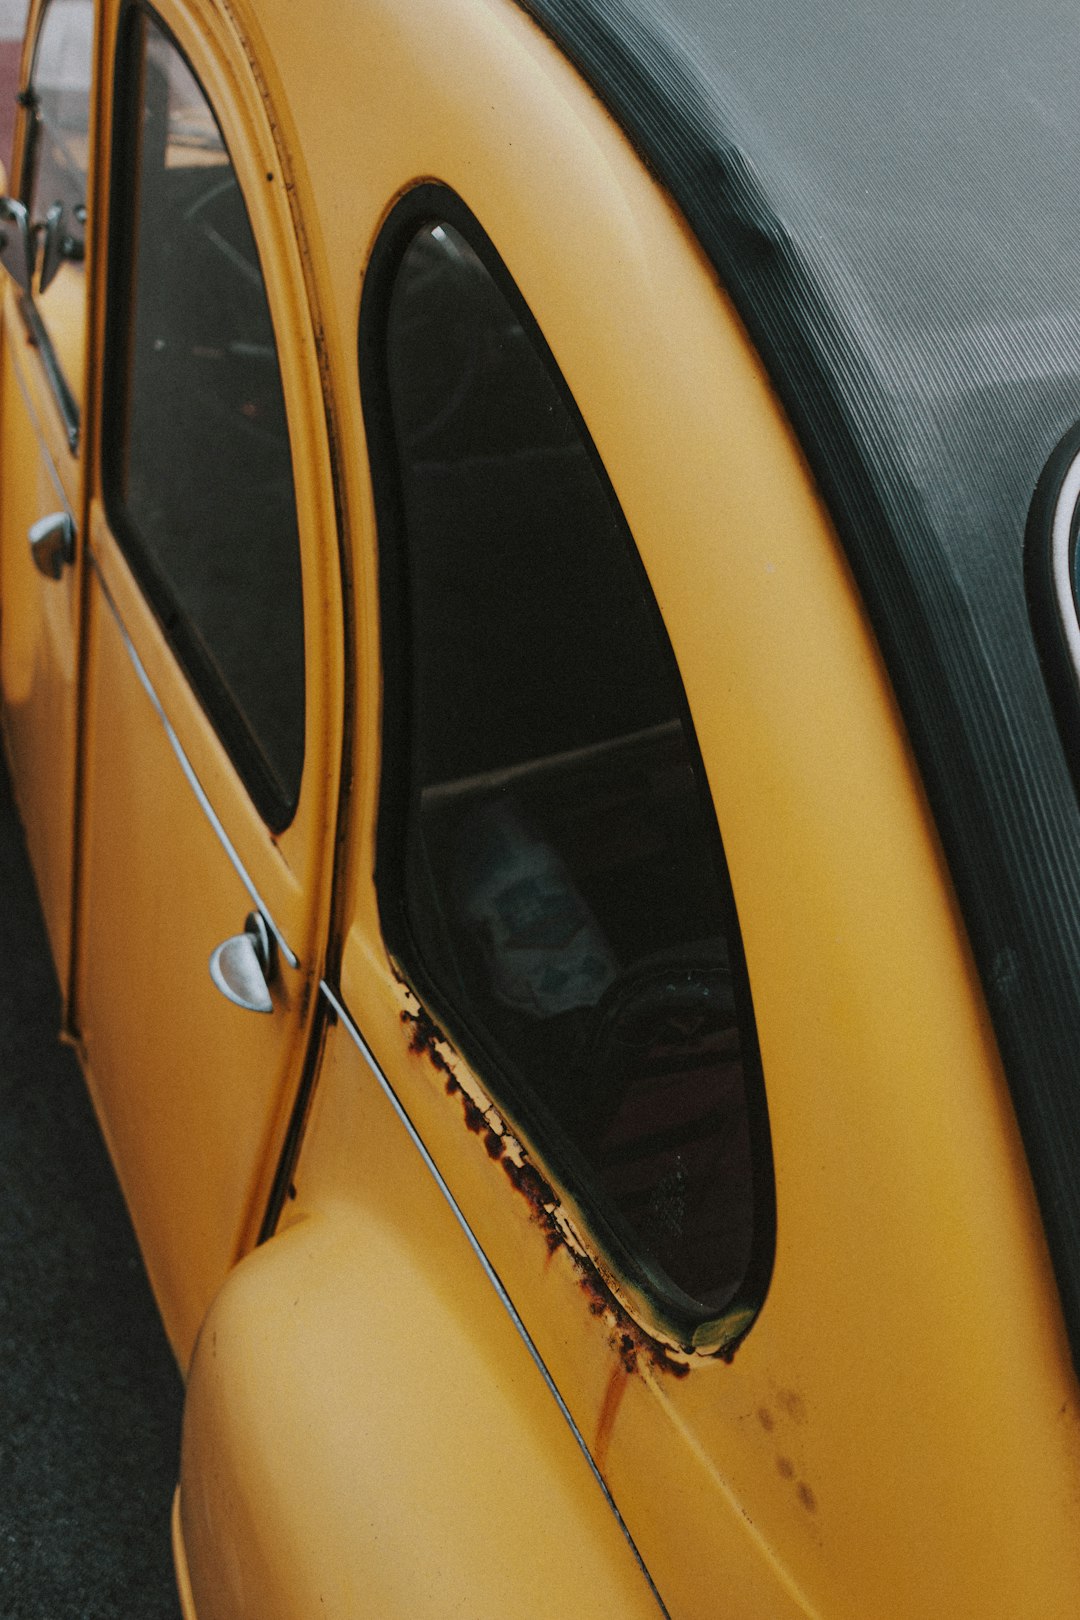 yellow car with opened door